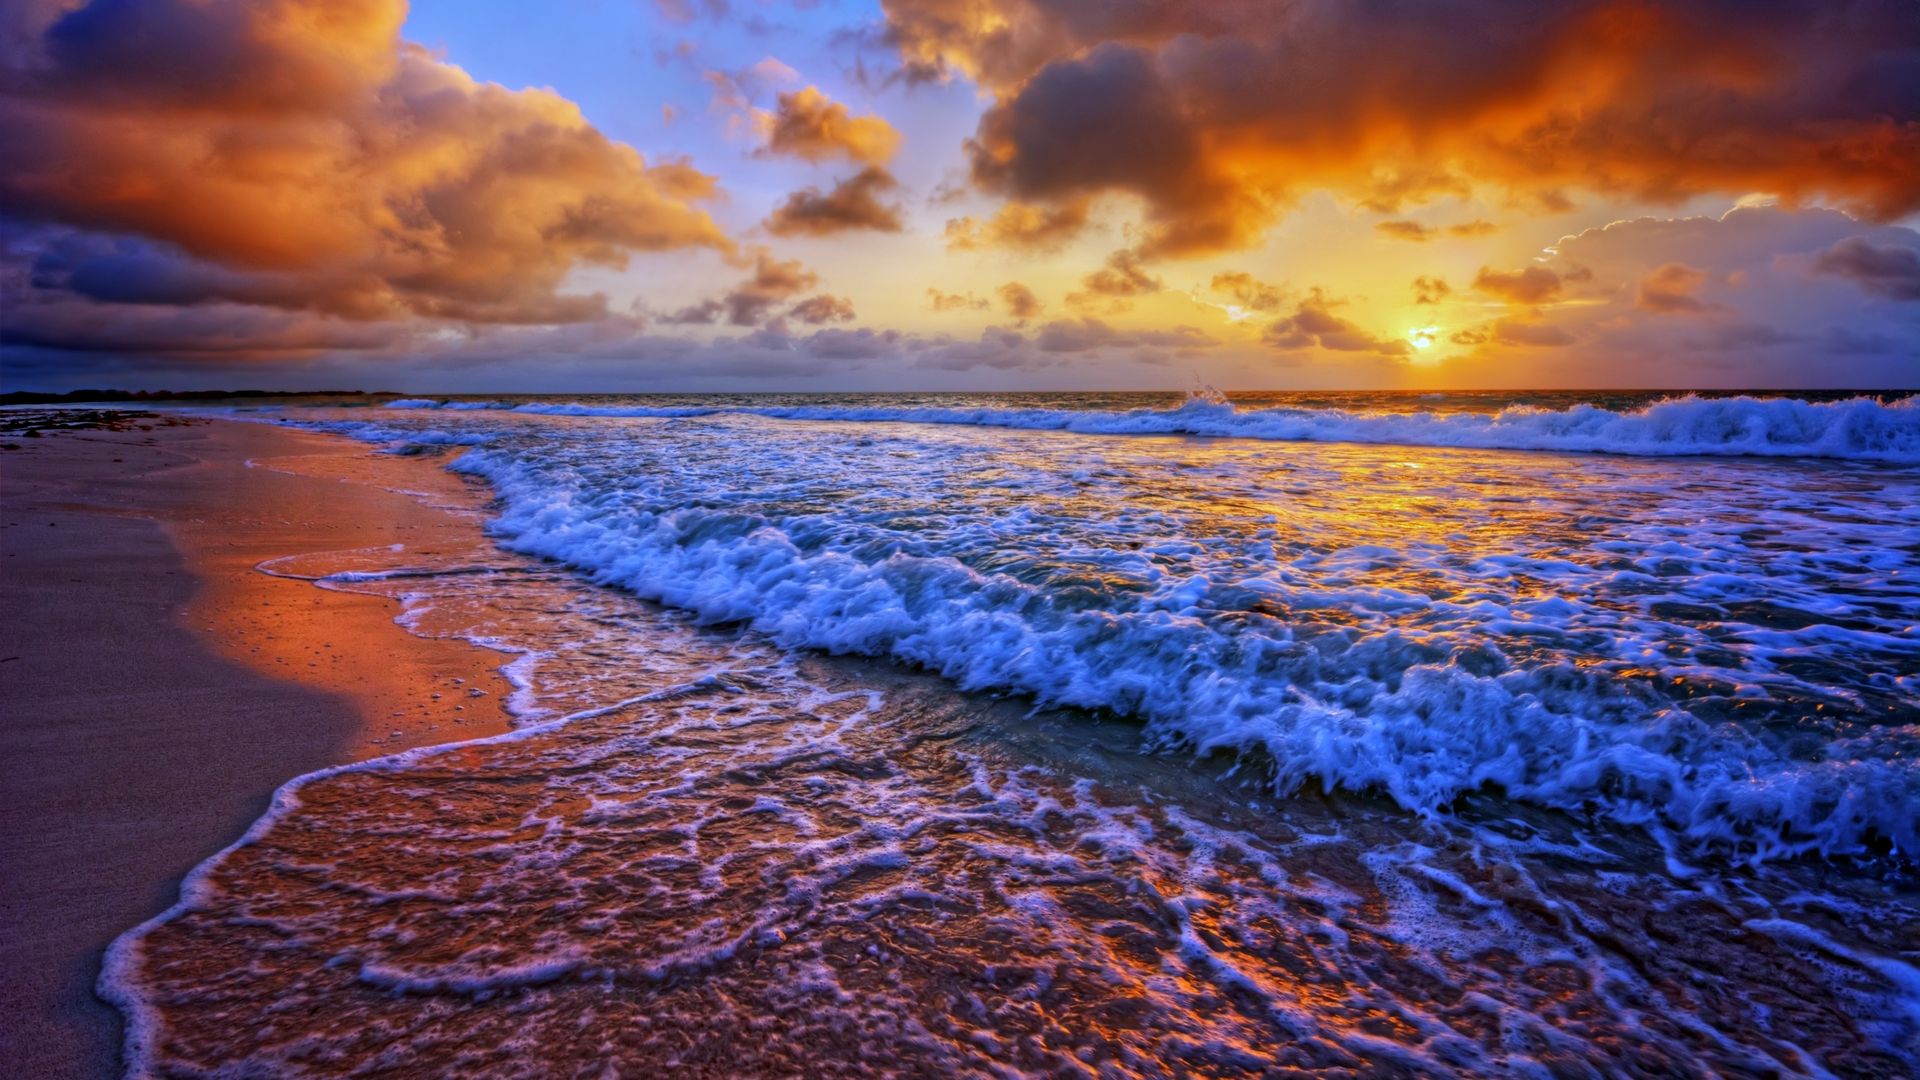 Beach Sunset Wallpaper 1080p Flip